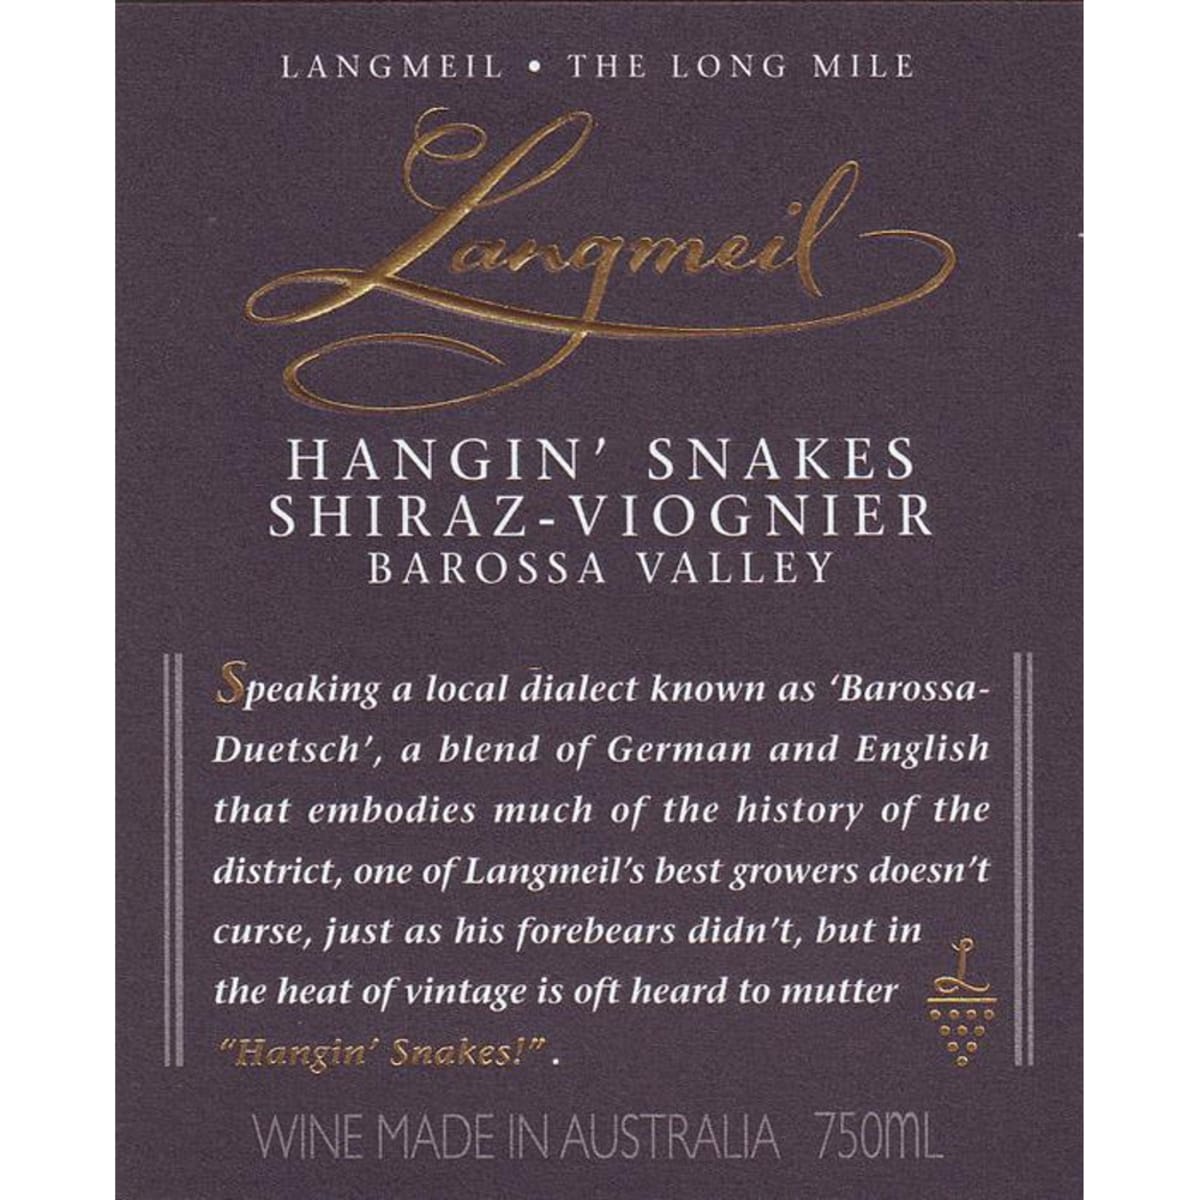 Langmeil Hangin' Snakes Shiraz-Viognier 2008 Front Label